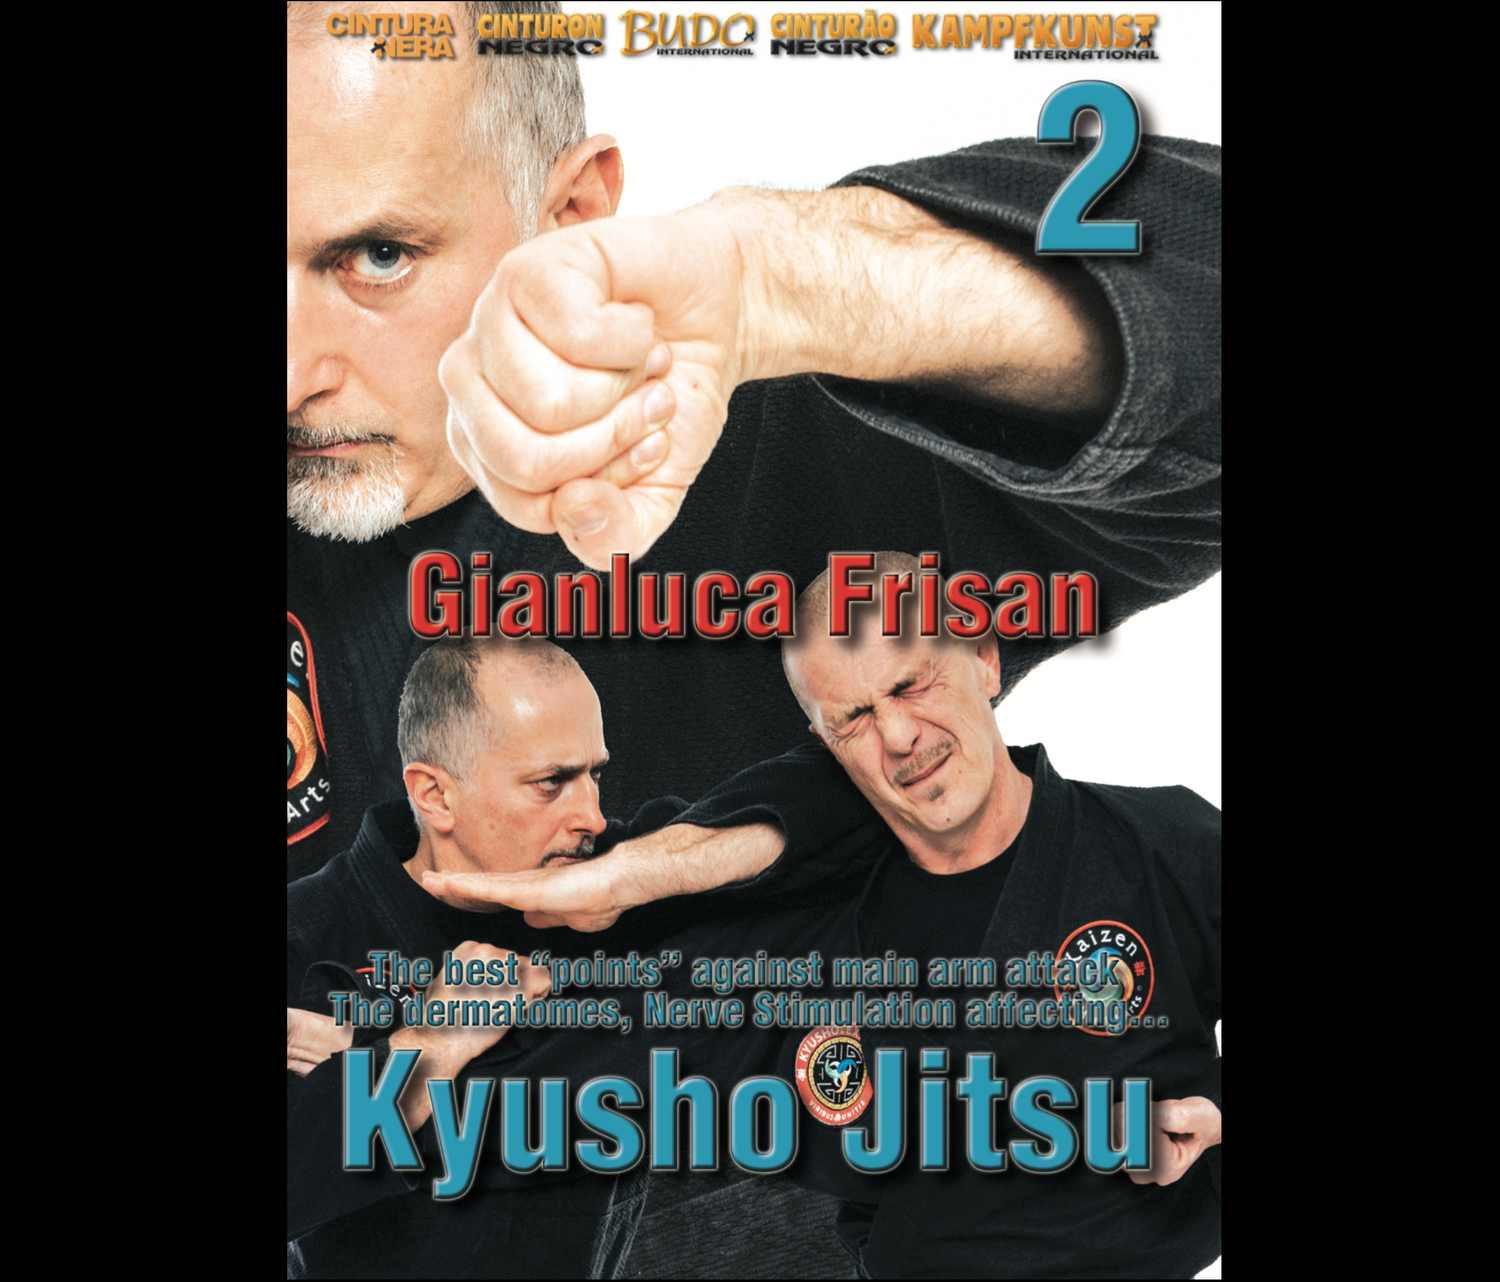 Estimulación nerviosa Kyusho Jitsu 2 con Gianluca Frisan (bajo demanda)